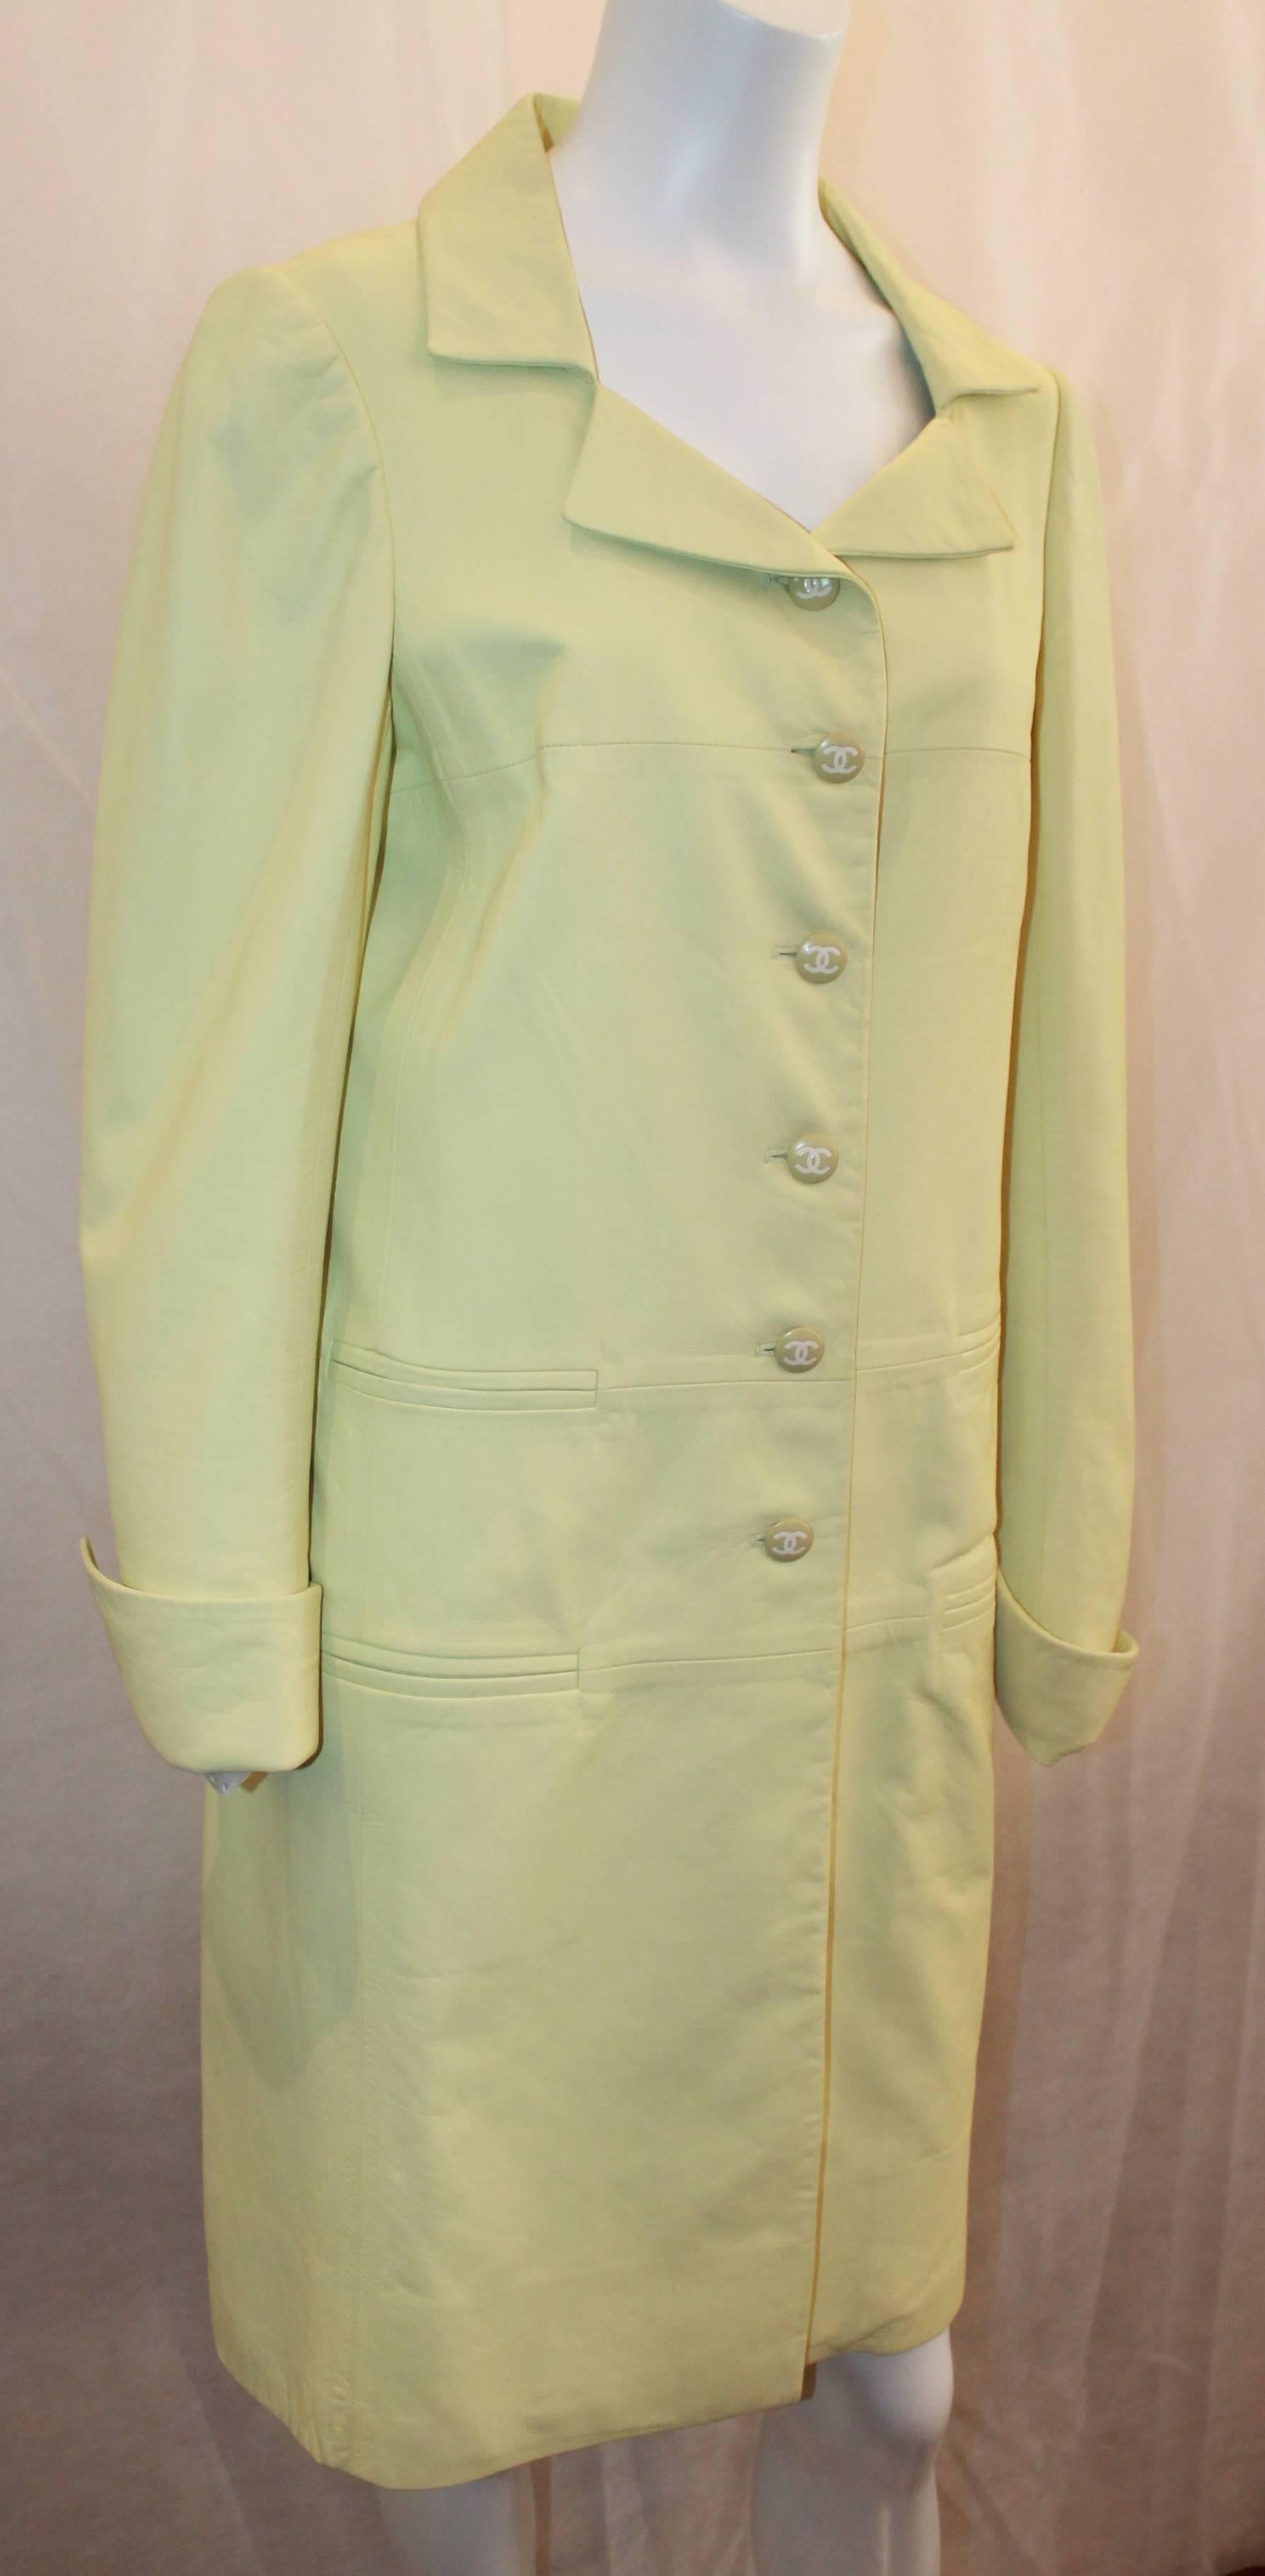 Chanel Chartreuse Lammfell 3/4 Mantel - 40 - 04C. Dieser schöne 3/4-Mantel hat 4 Taschenschlitze, große 